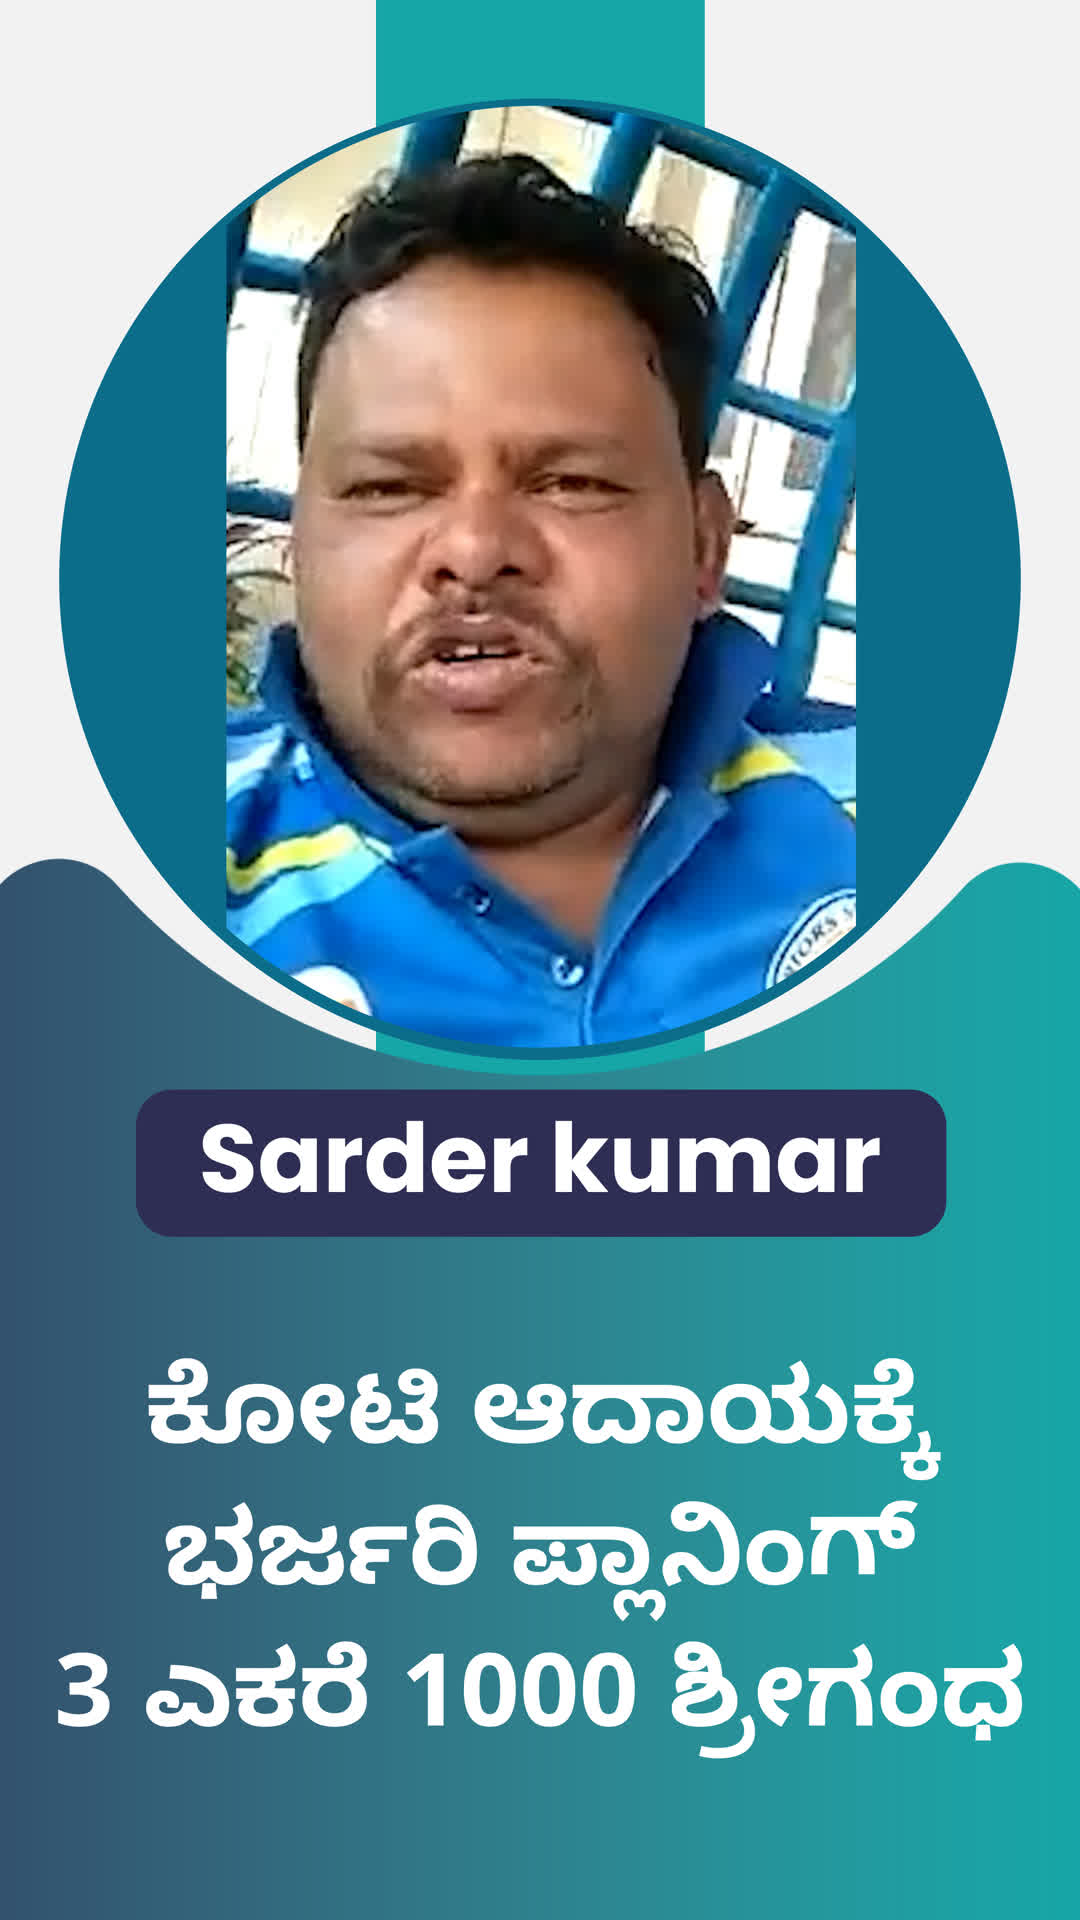 Sarder kumar's Honest Review of ffreedom app - Ballari ,Karnataka